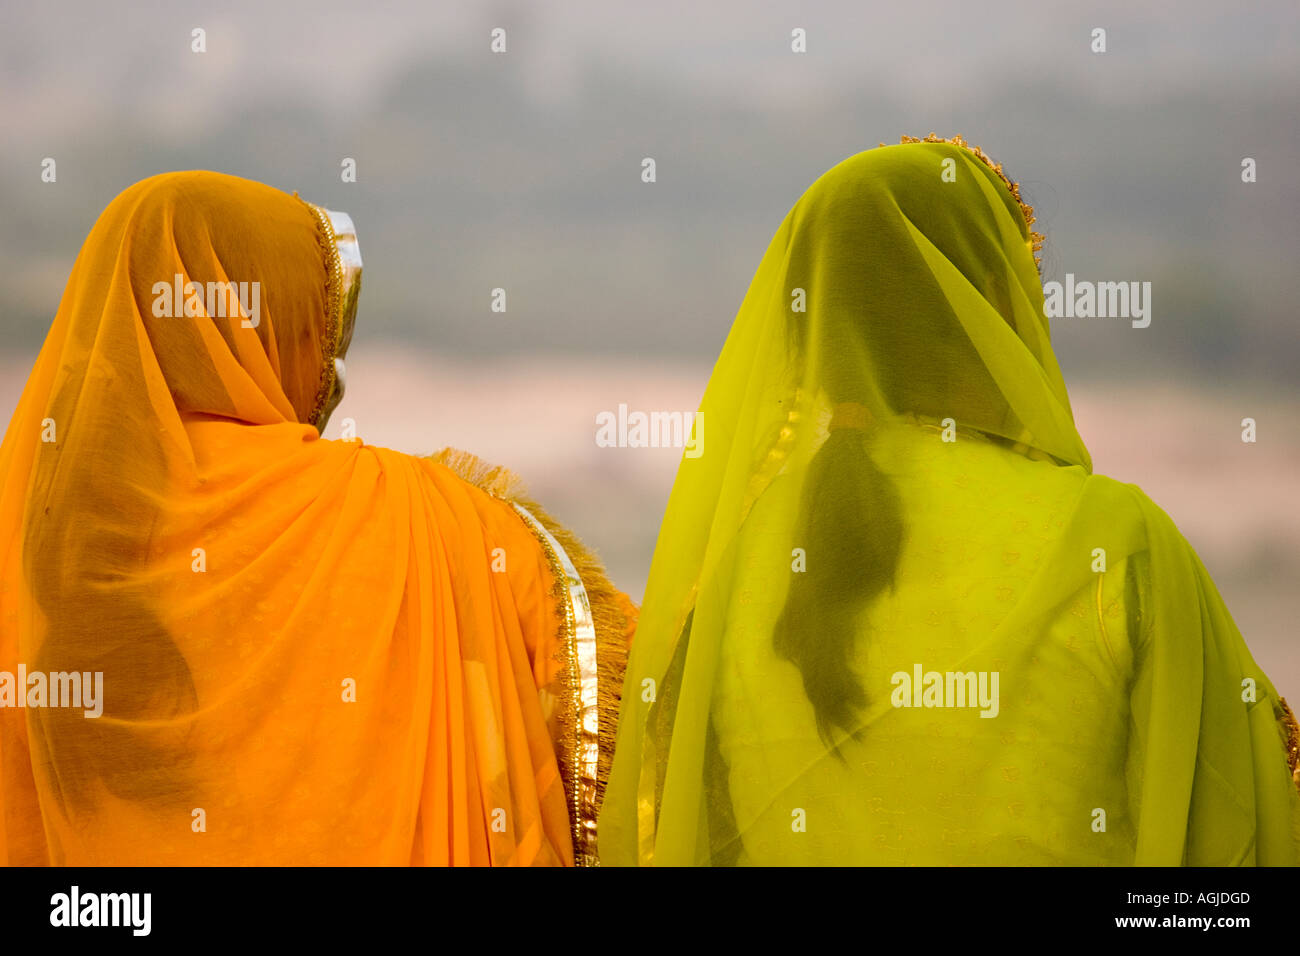 asia india 2 indian women with coloured saris Stock Photo